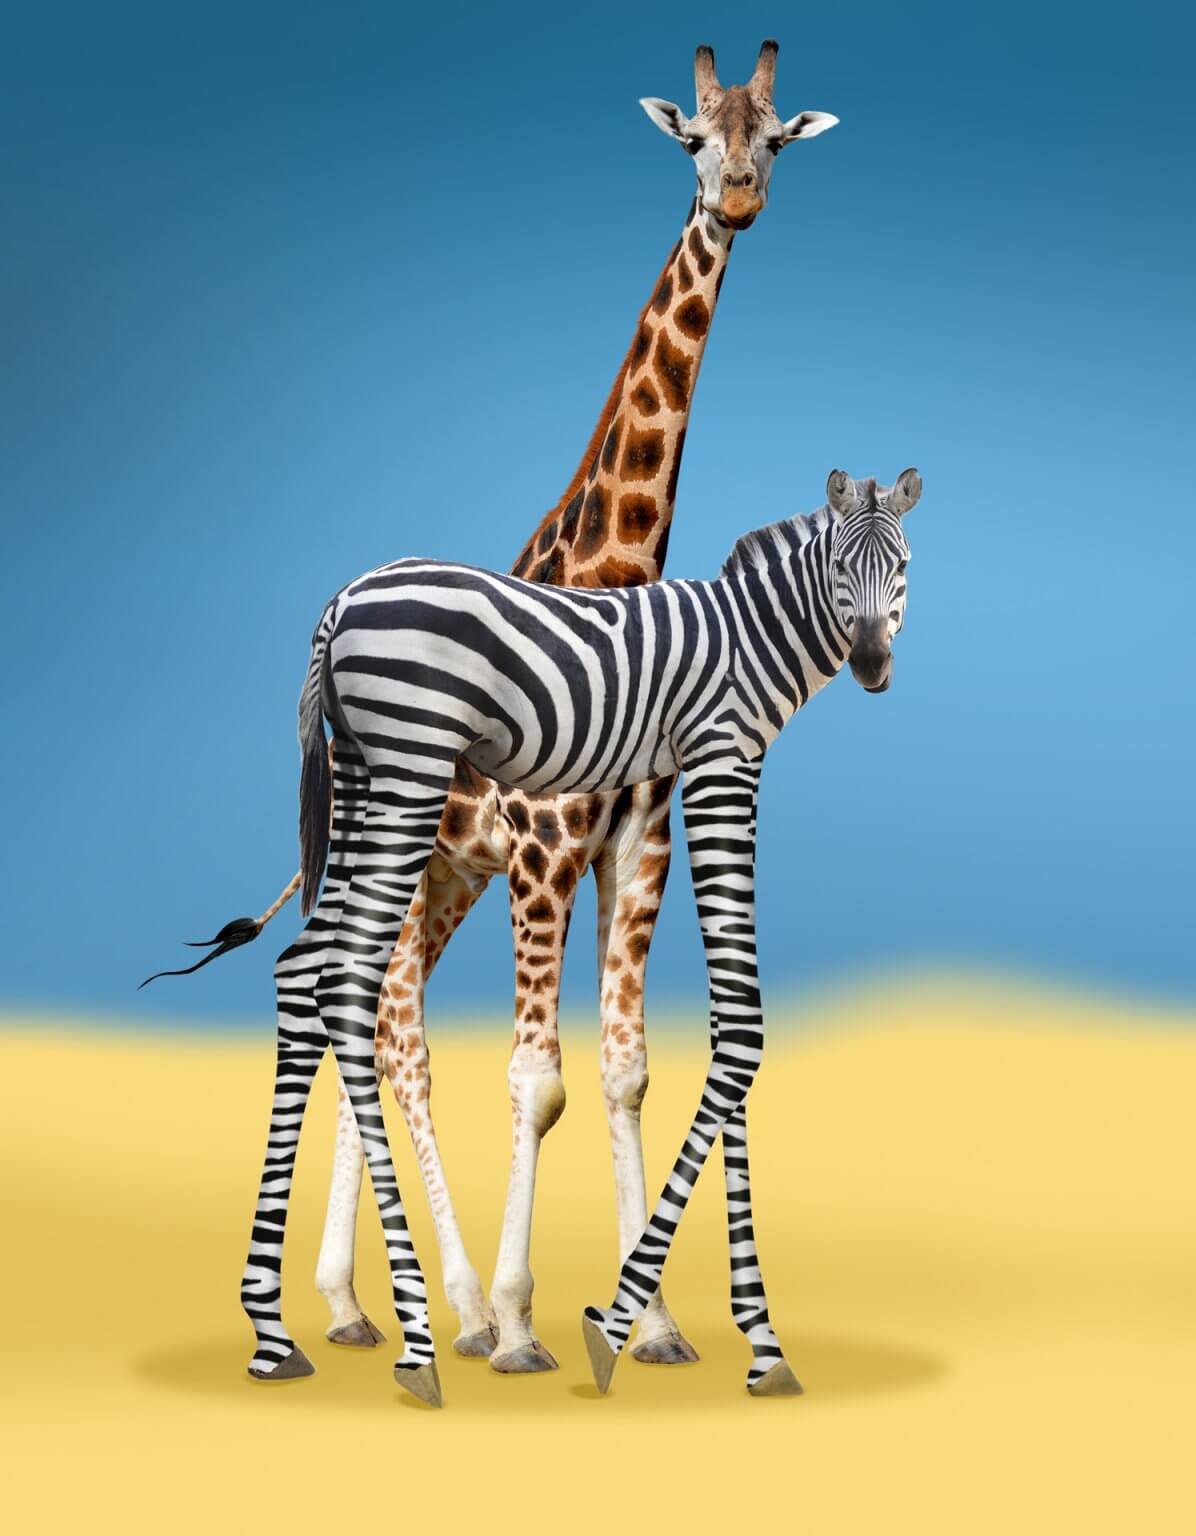 Kreative Bildbearbeitung Composing Artwork zeigt eine Giraffen-Vetar mit seinem langbeinigem Sohn der ein Zebra ist